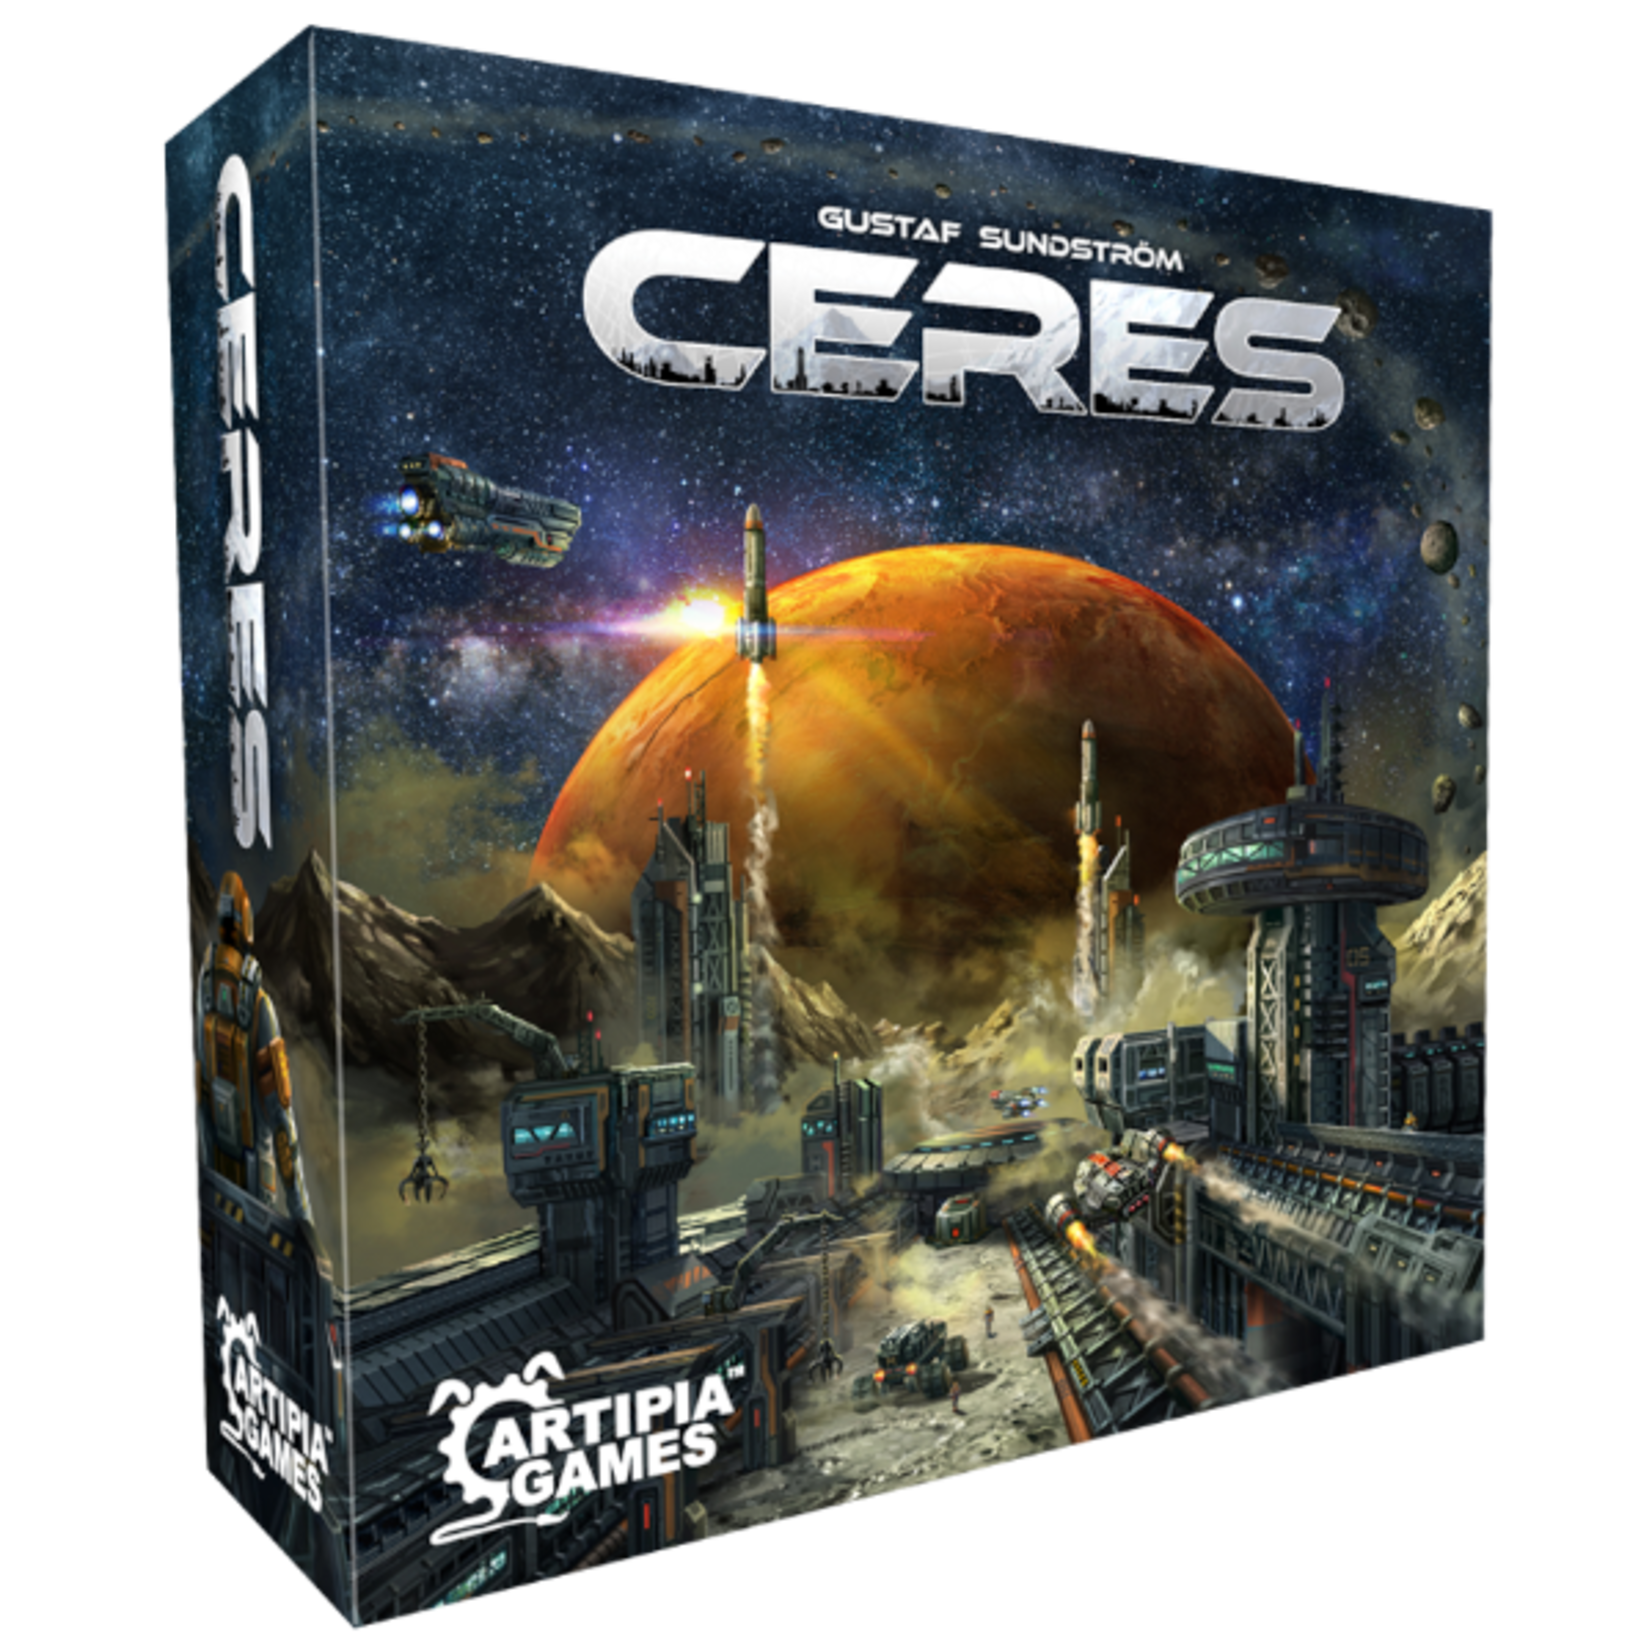 Artipia Games Ceres